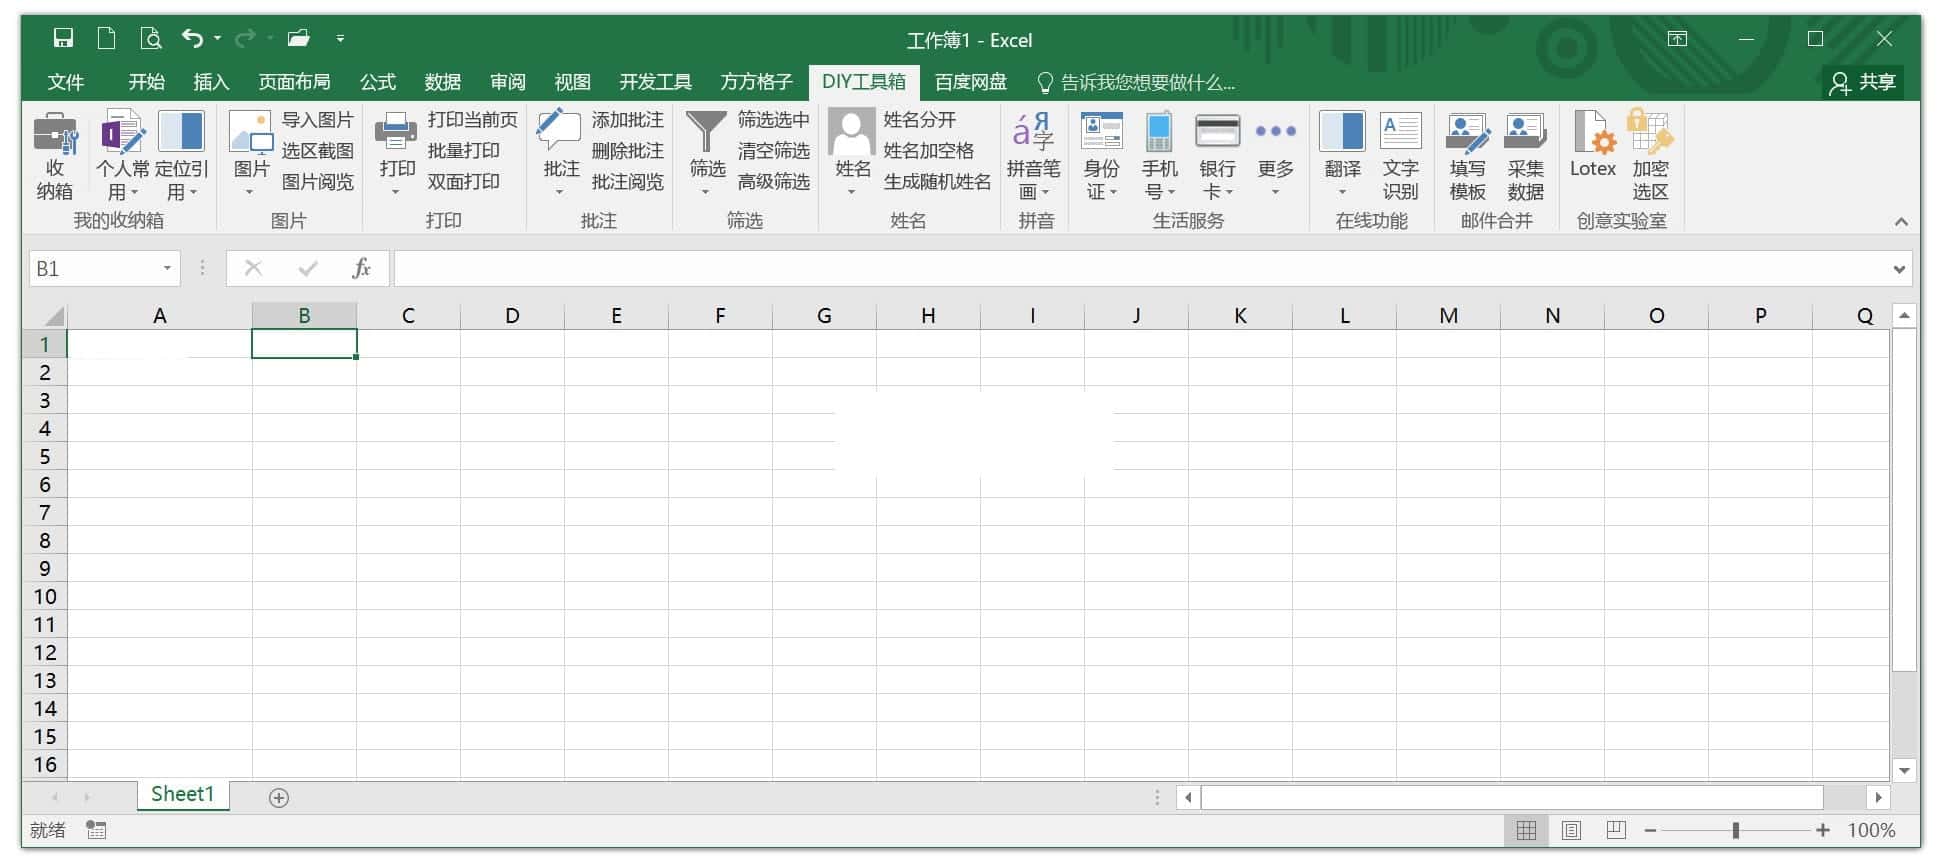 方方格子 Excel工具箱 v3.7.0.0 特别版-无痕哥